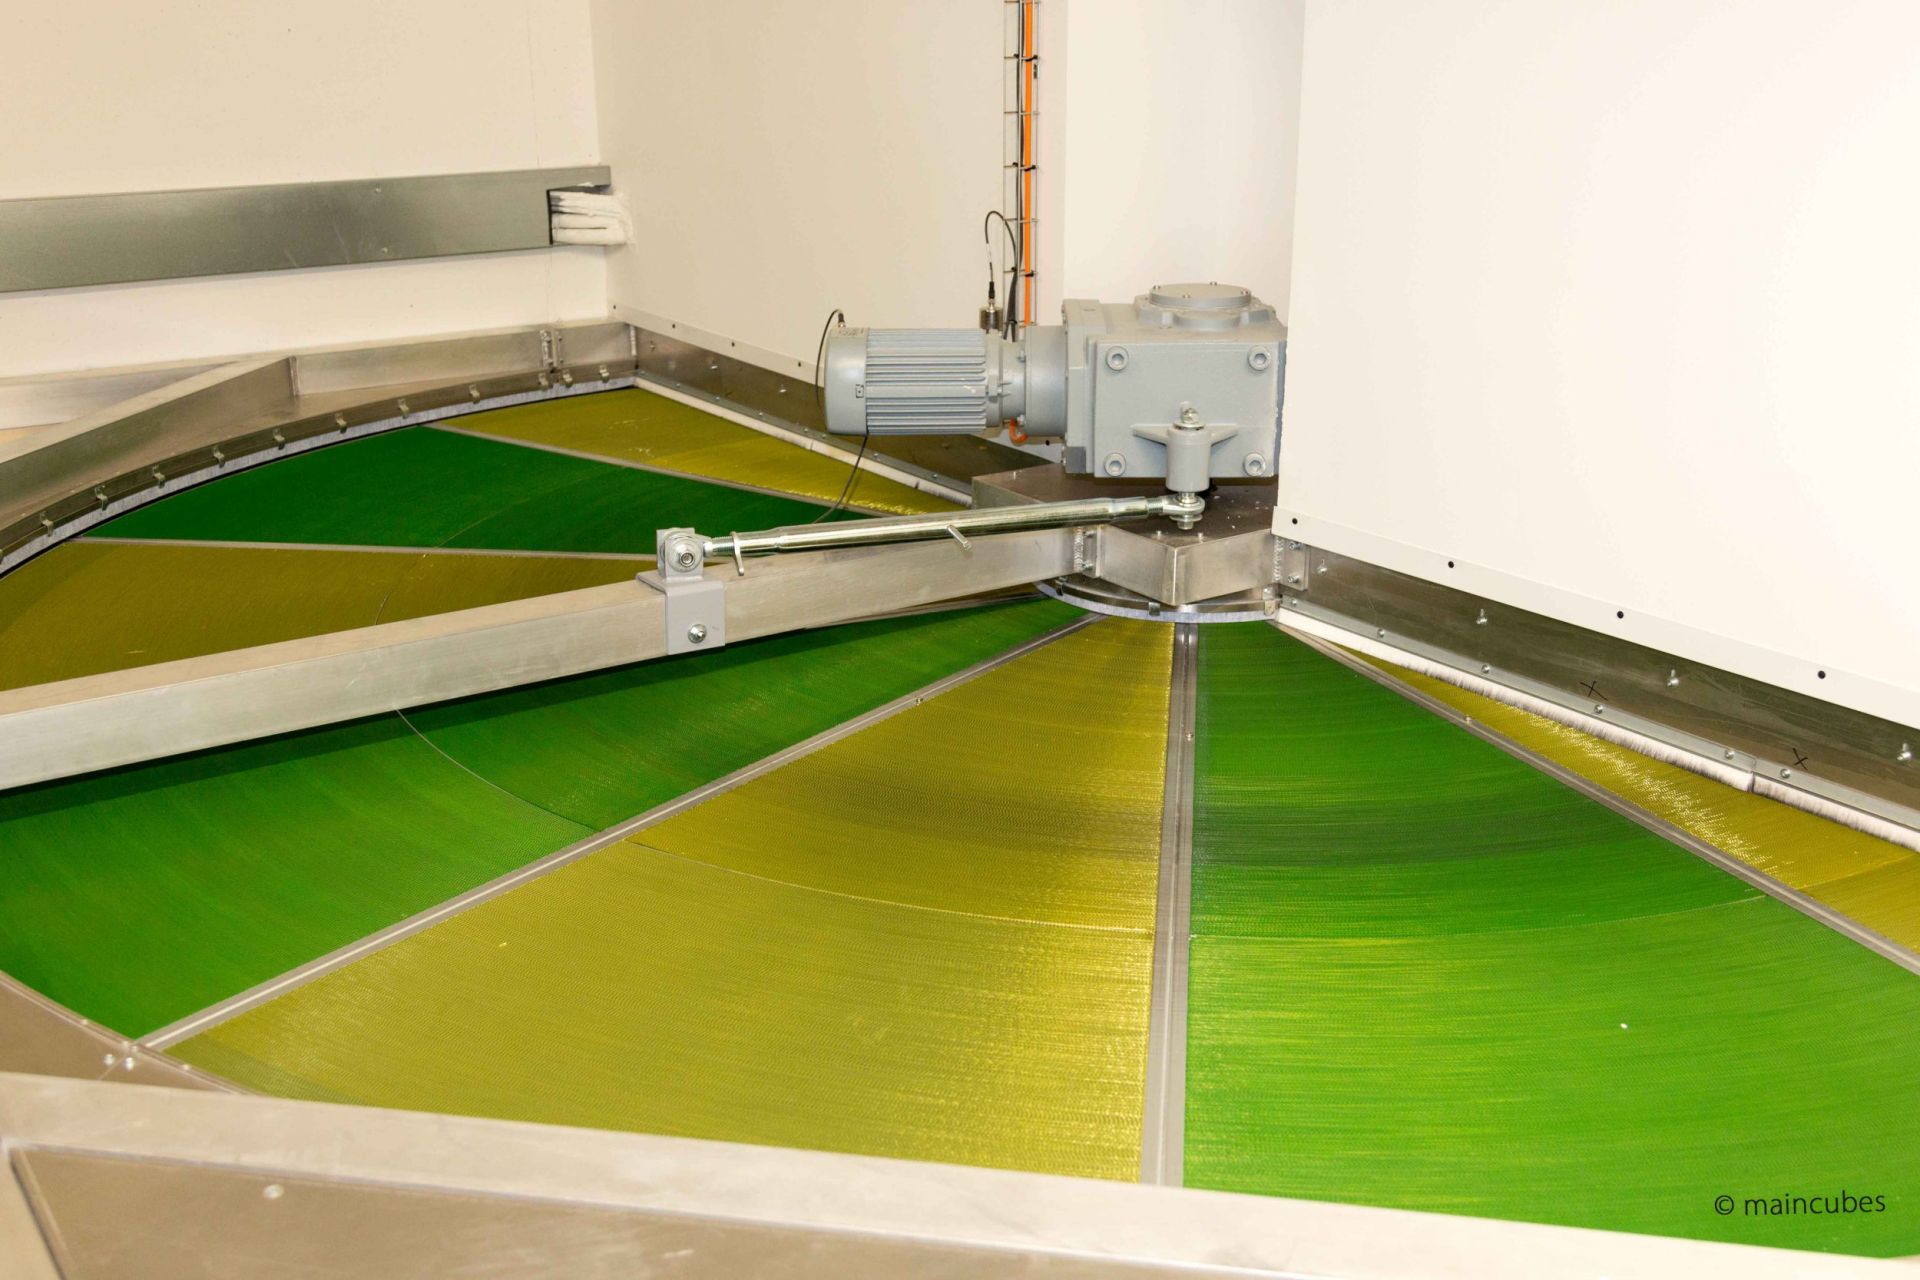 Im Fokus das Kyoto-Kühlrad im maincubes FRA-01 - Bestehend aus gelb/grün gefärbtem Aluminium um die Wärme zwischen Außenluft und Innenluft zu tauschen